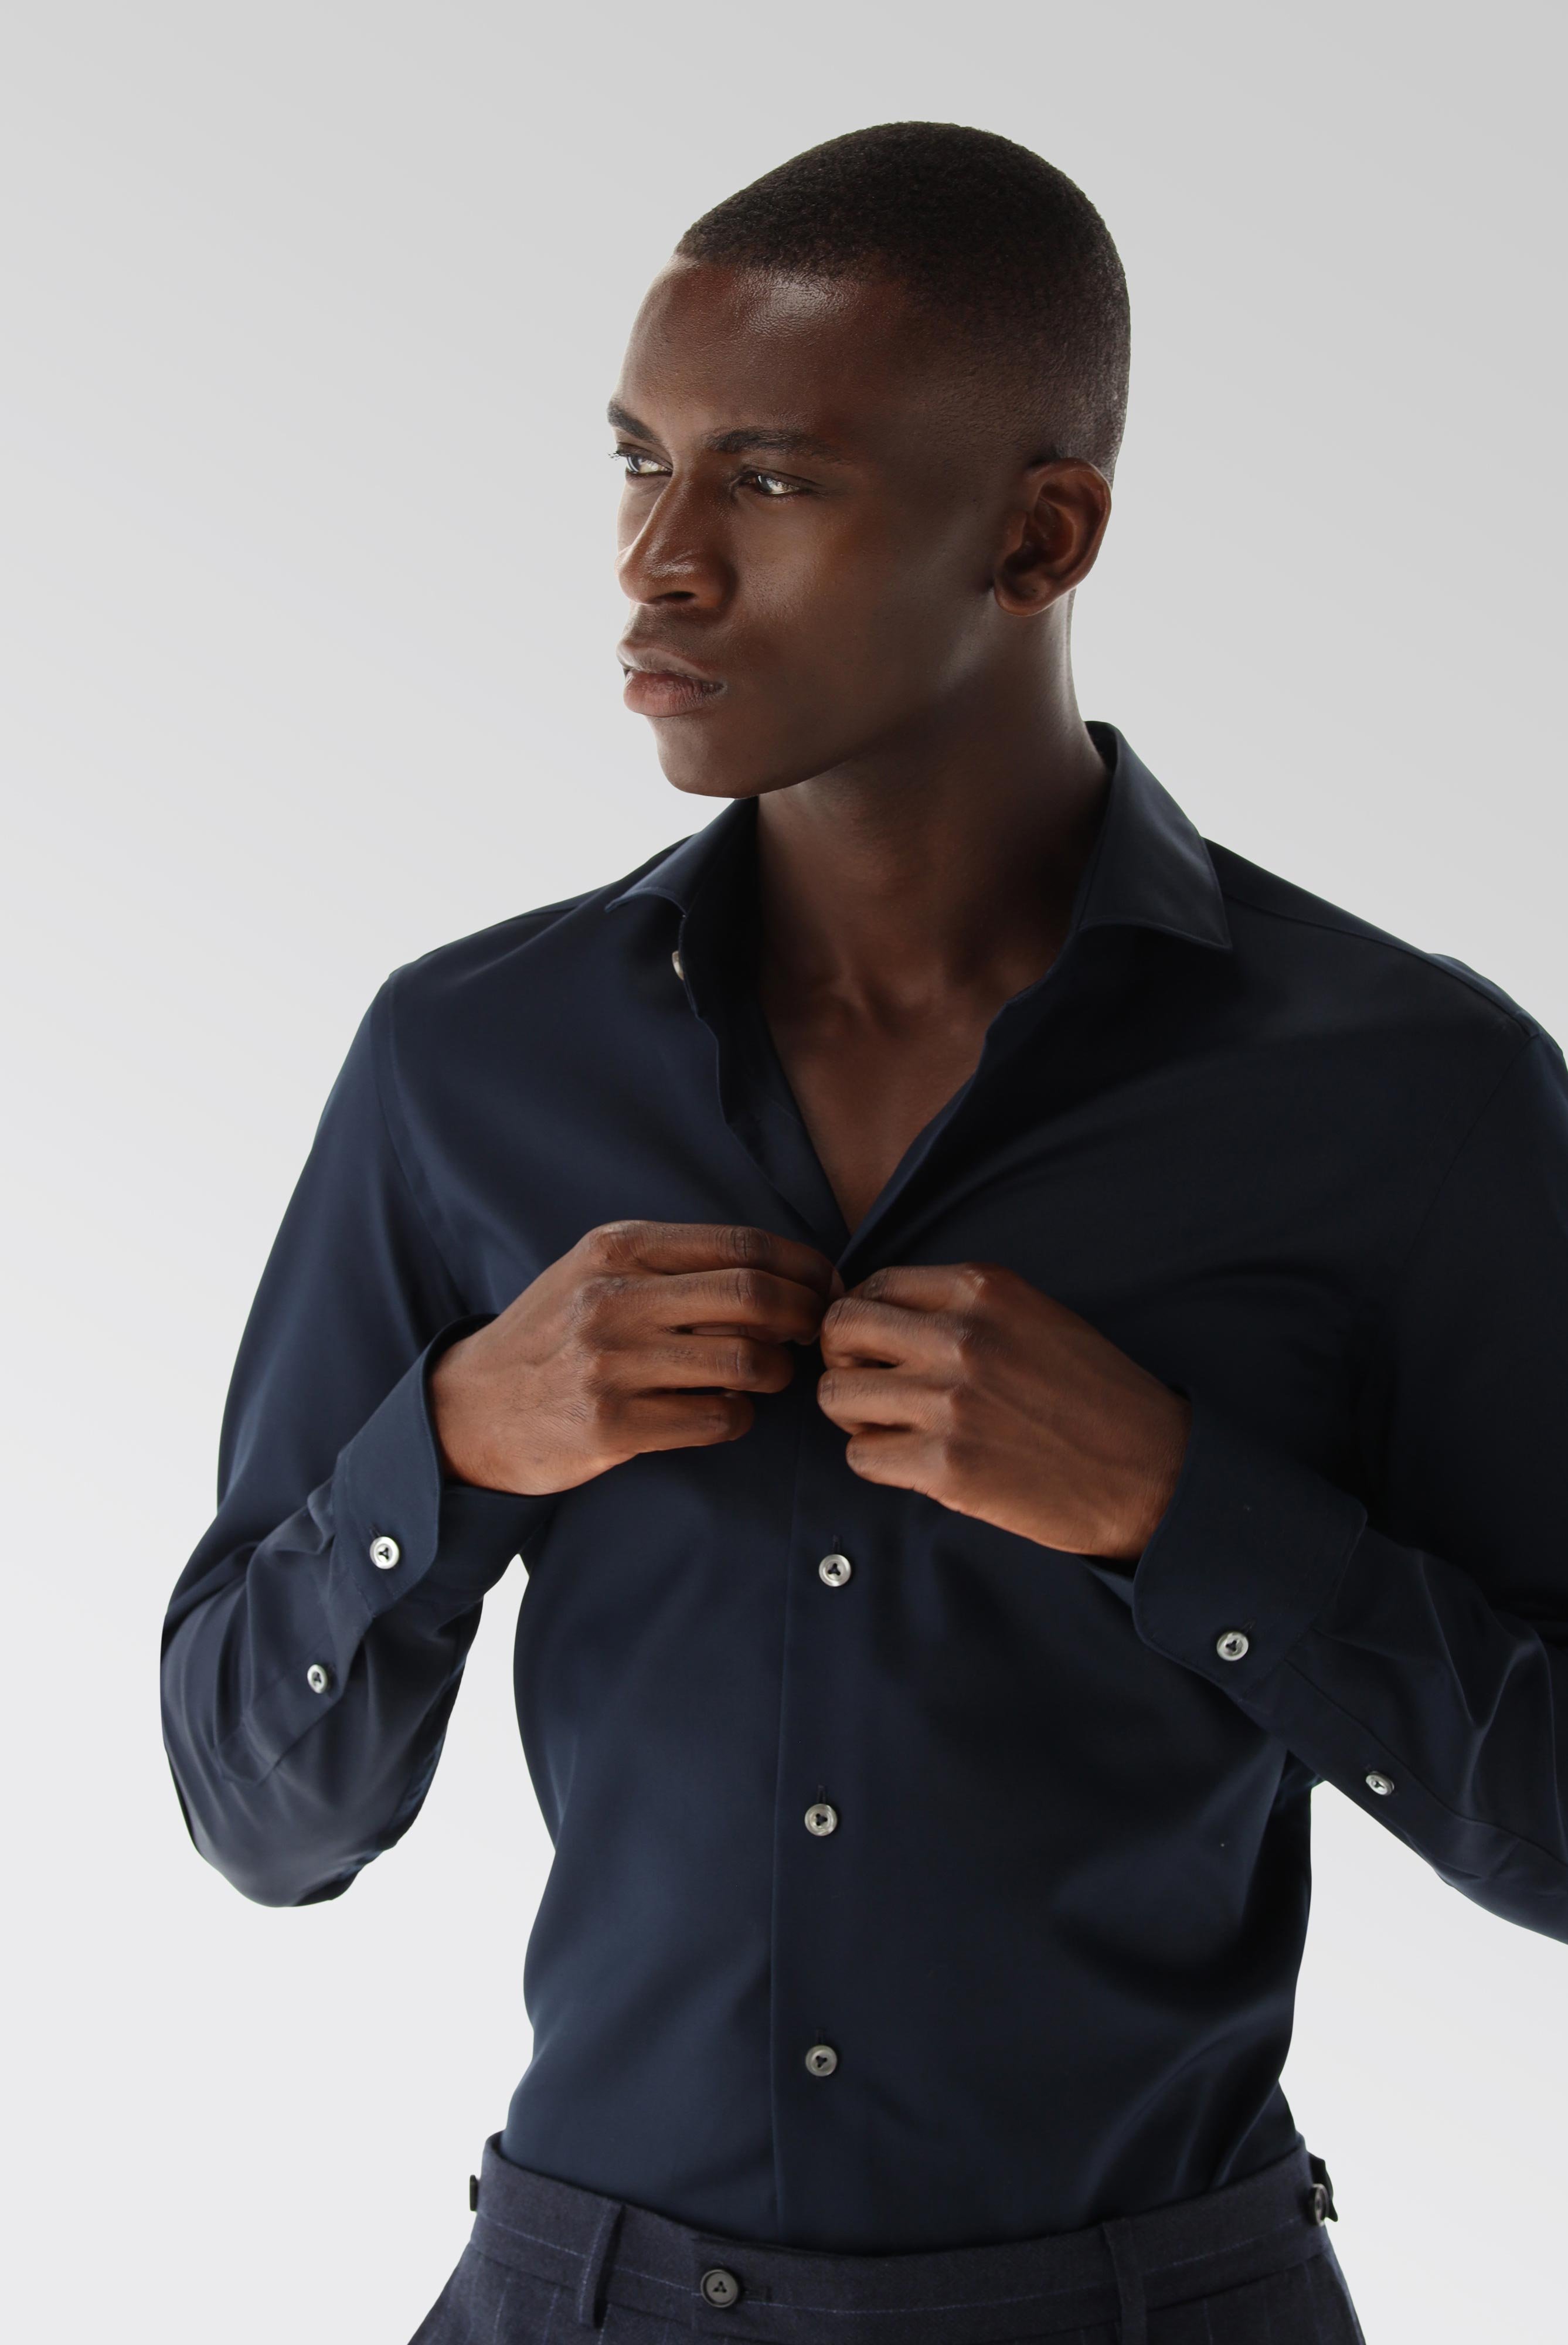 Bügelleichte Hemden+Bügelfreies Hybridshirt mit Jerseyeinsatz Slim Fit+20.2553.0F.132241.785.44